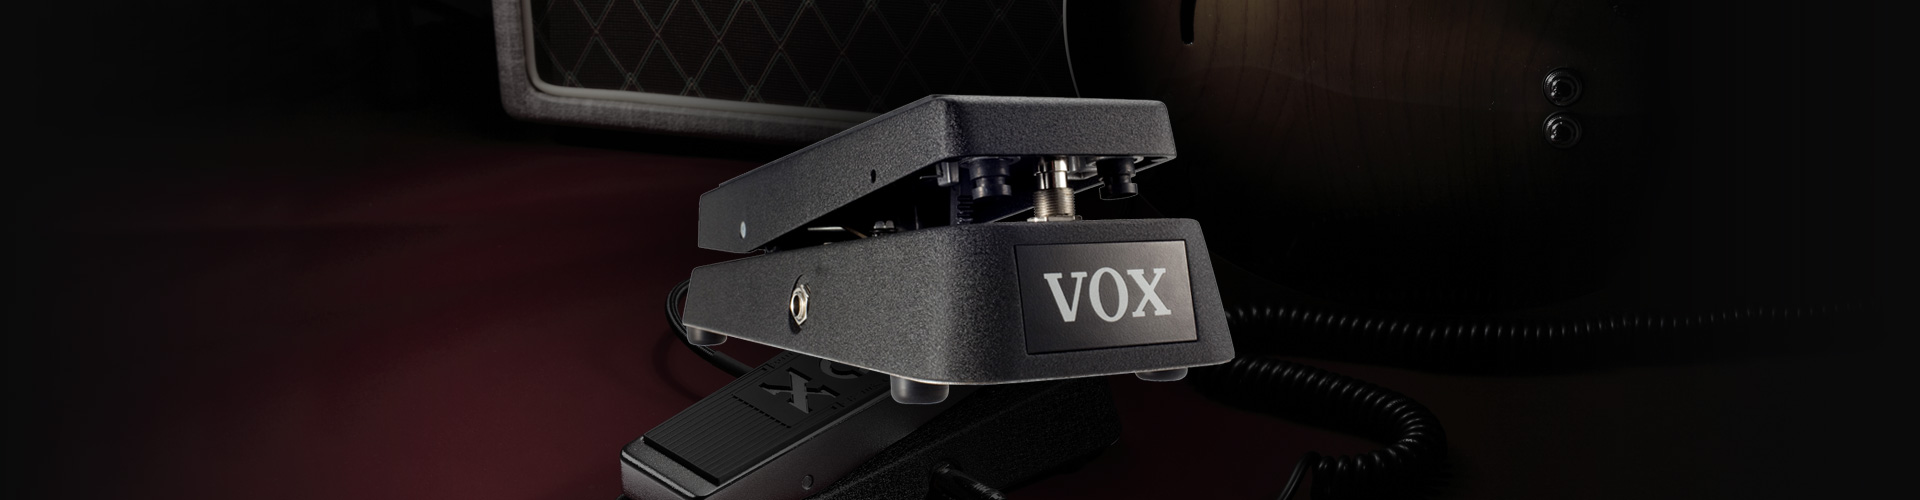 Vox Wah V845 - Wah & filter effect pedal - Variation 4